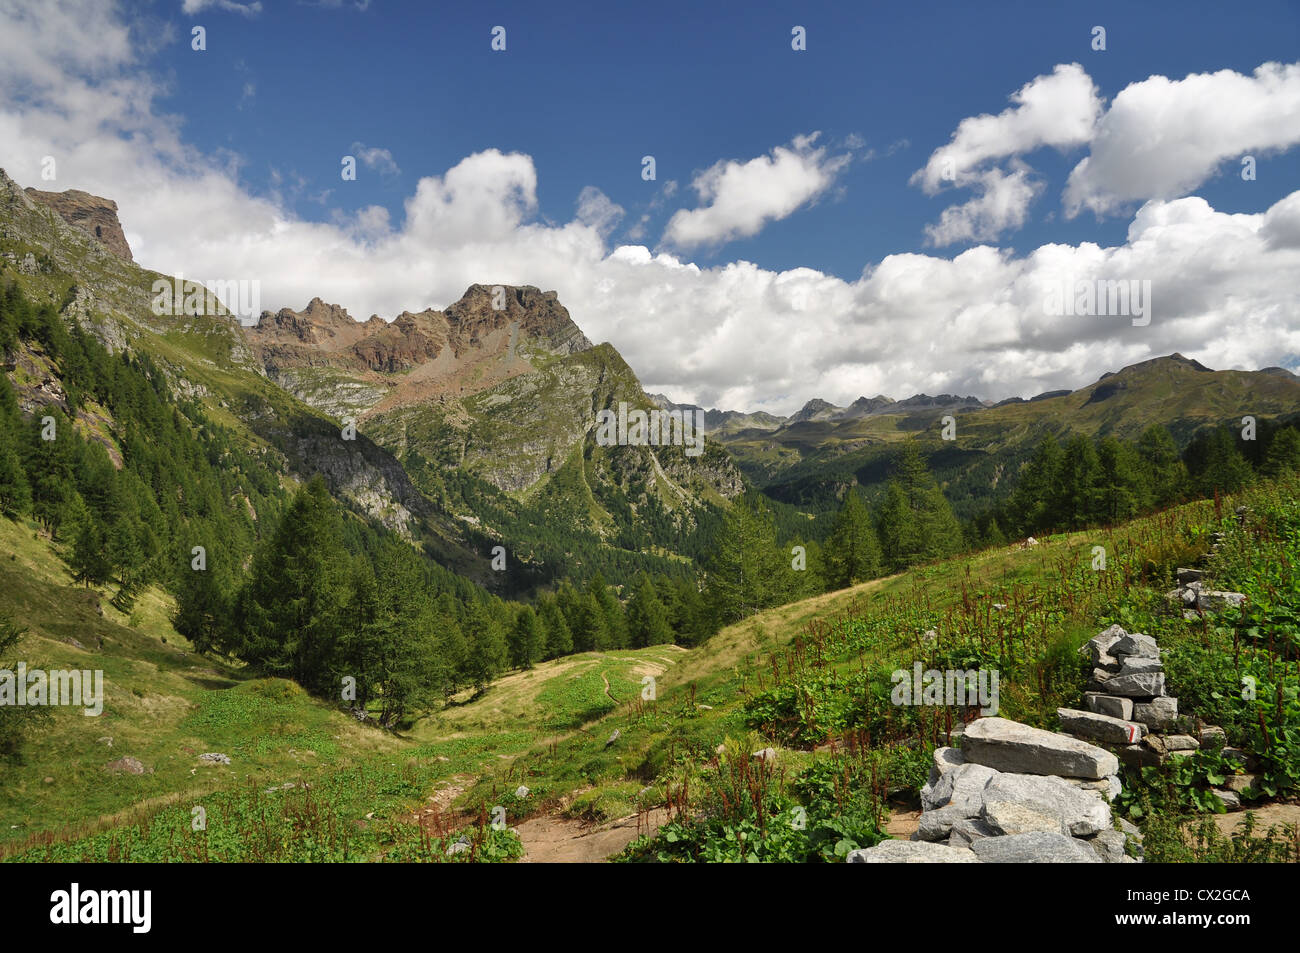 Paysage de haute montagne dans les Alpes, l'Alpe Devero, Italie Banque D'Images